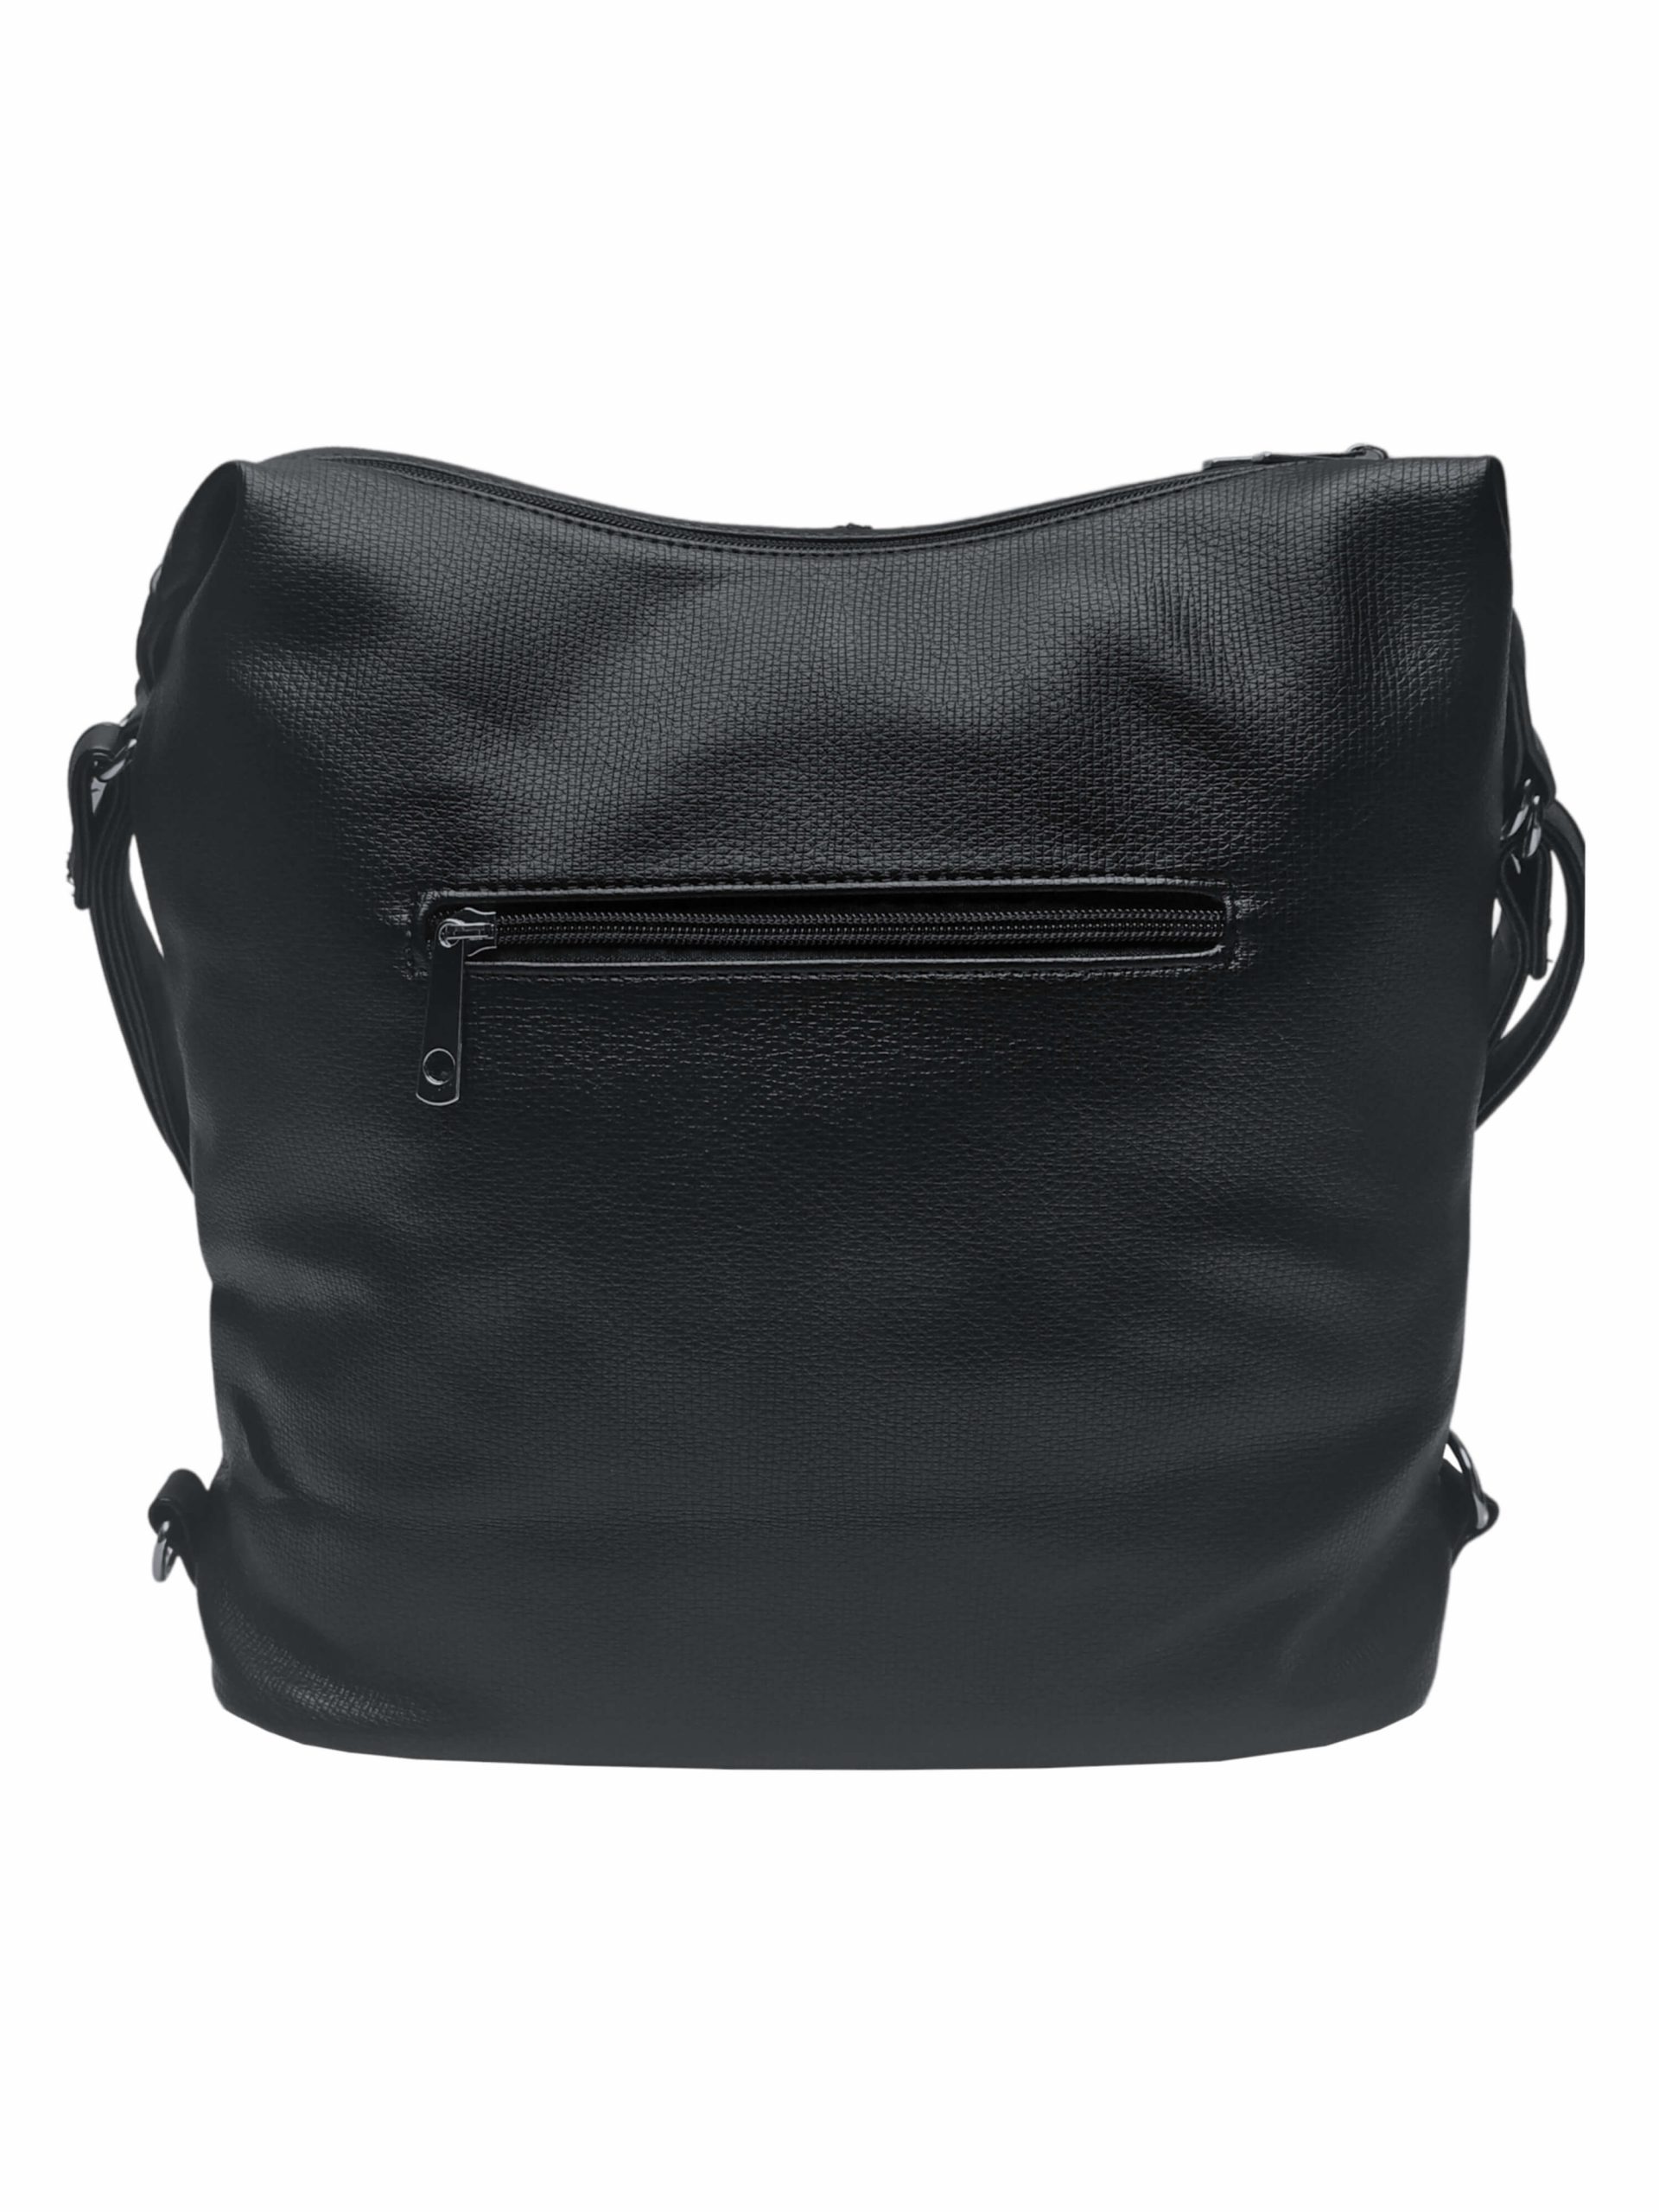 Velký černý kabelko-batoh s kapsami, Tapple, H181175N2, zadní strana kabelko-batohu